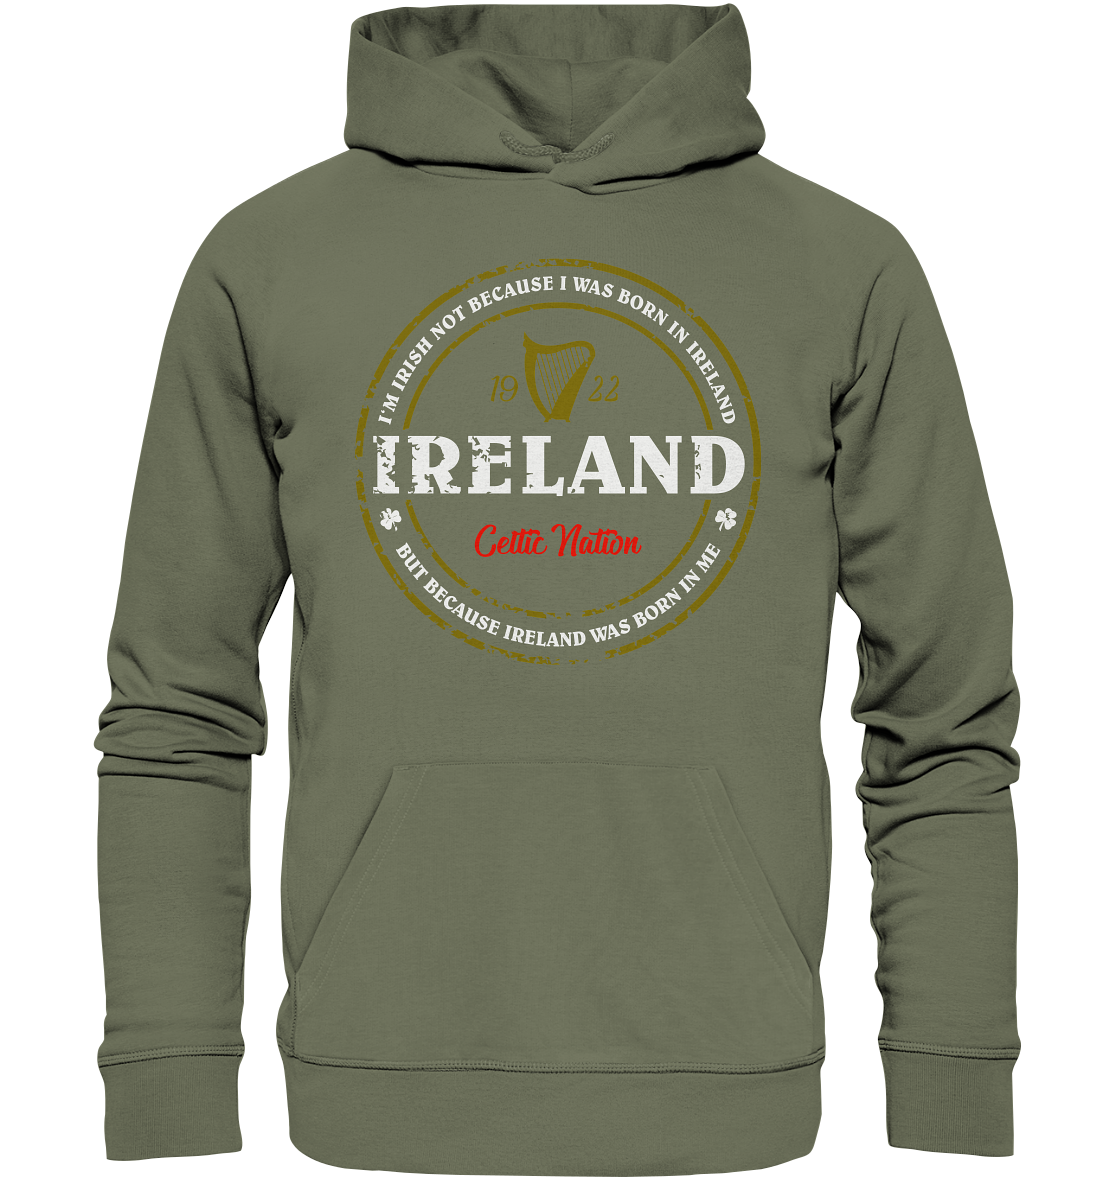 Ireland Was Born In Me - Premium Unisex Hoodie